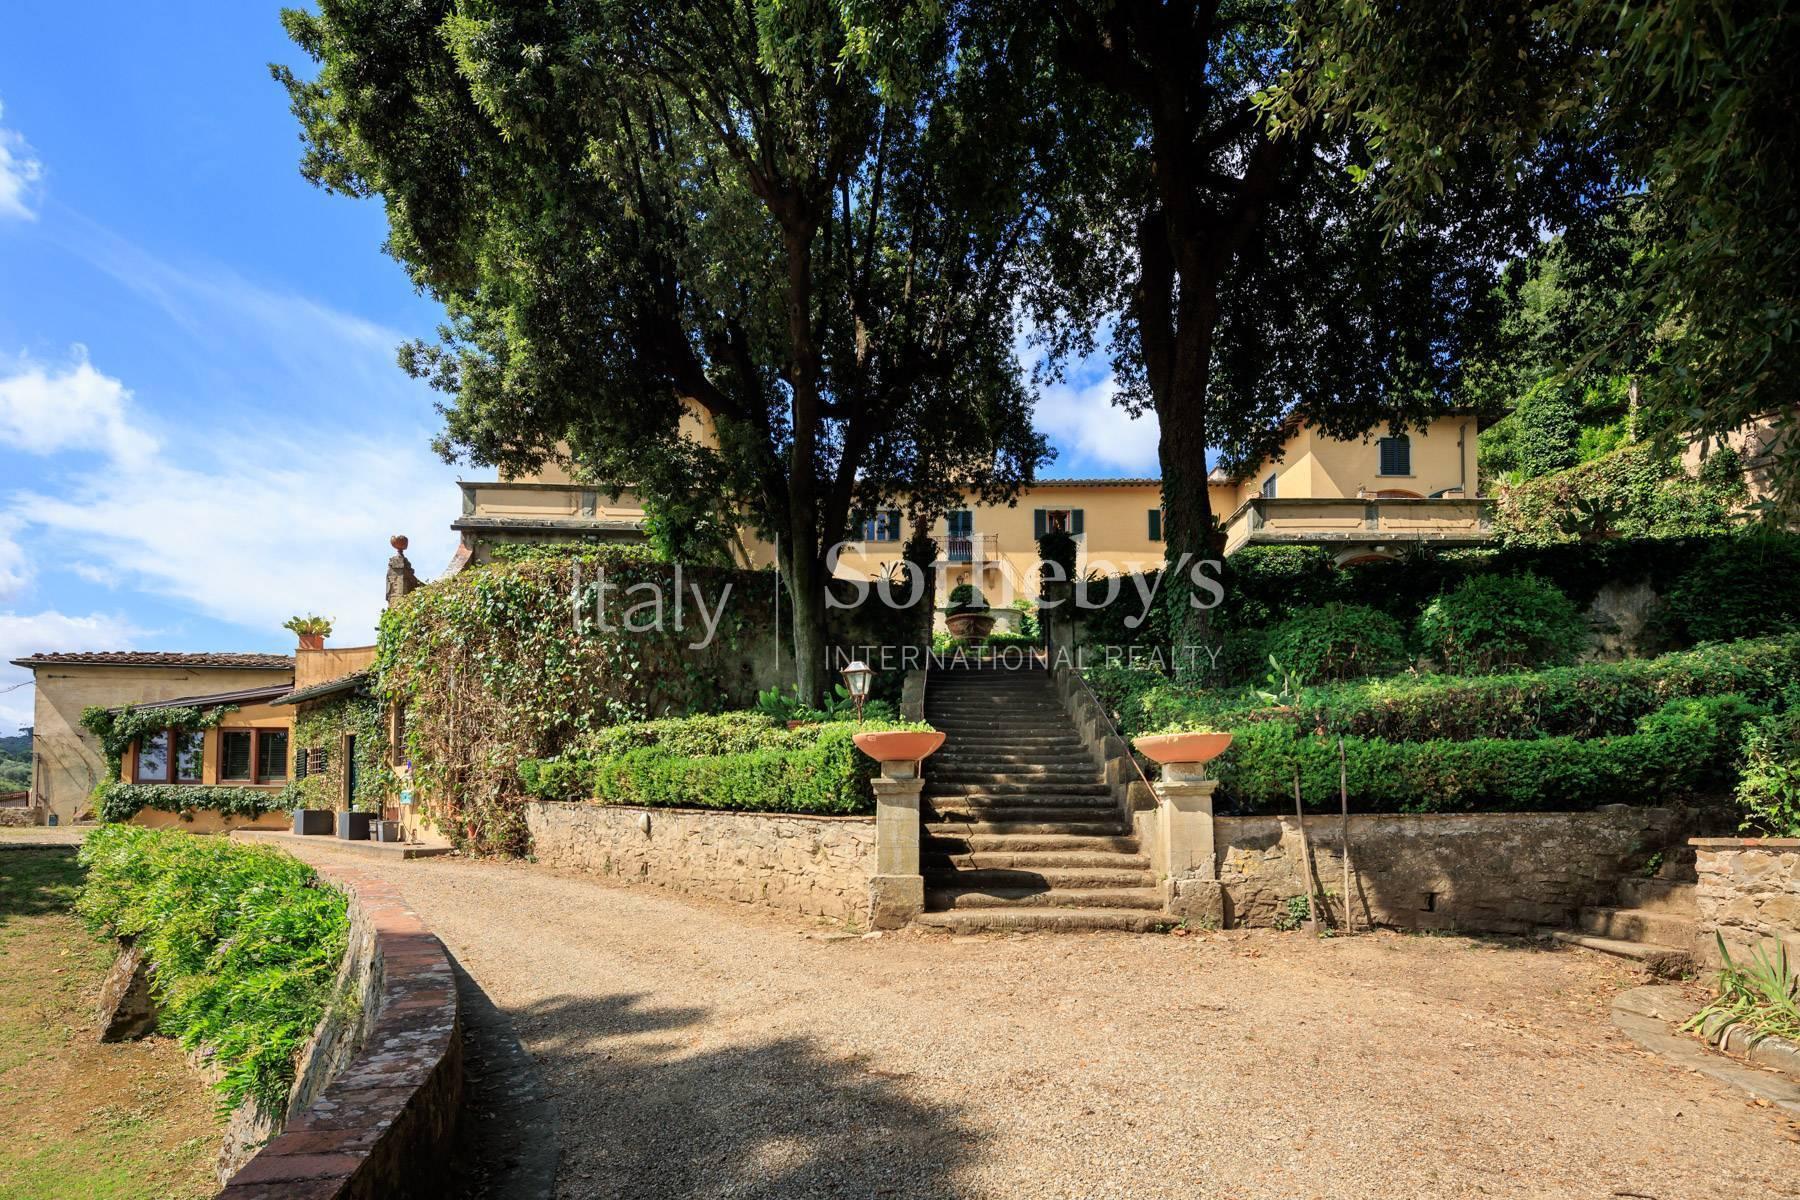 Prestigieux appartement dans villa historique proche du Piazzale Michelangelo - 8